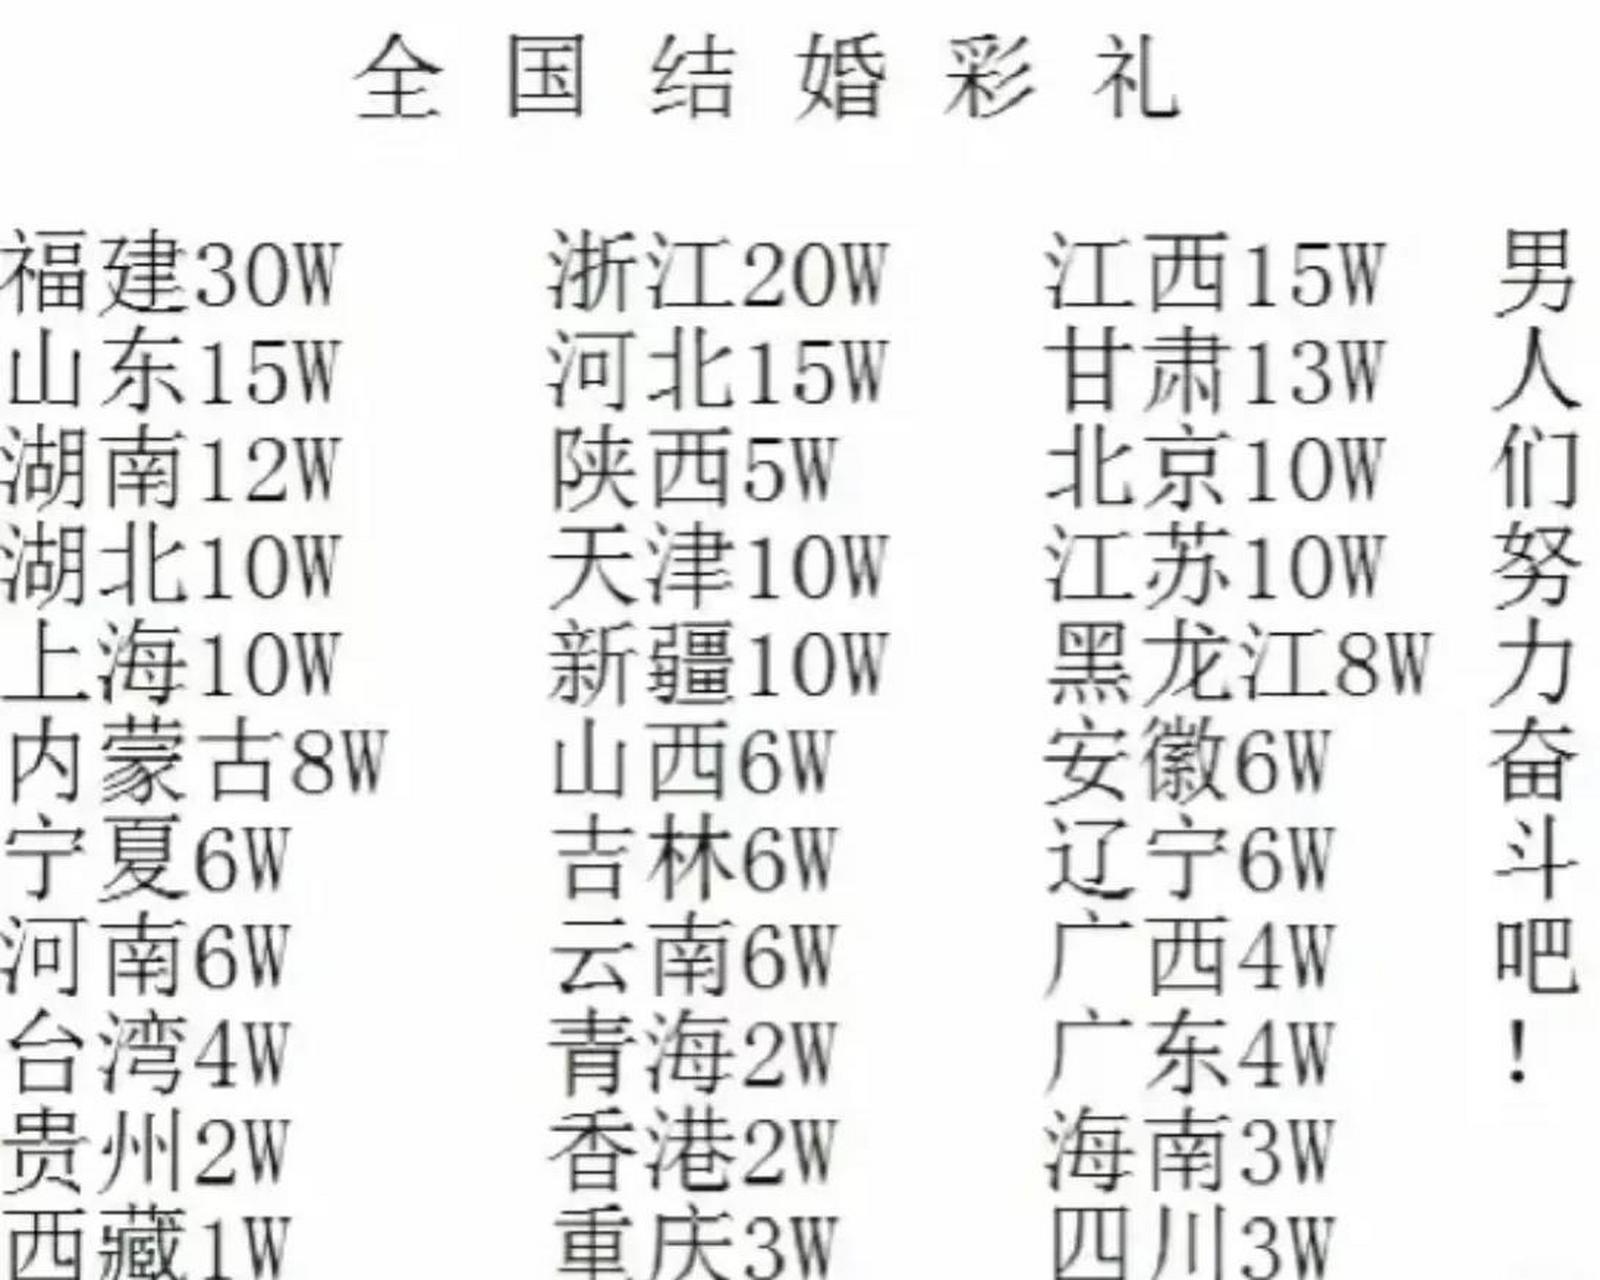 中国各省彩礼排行榜图片